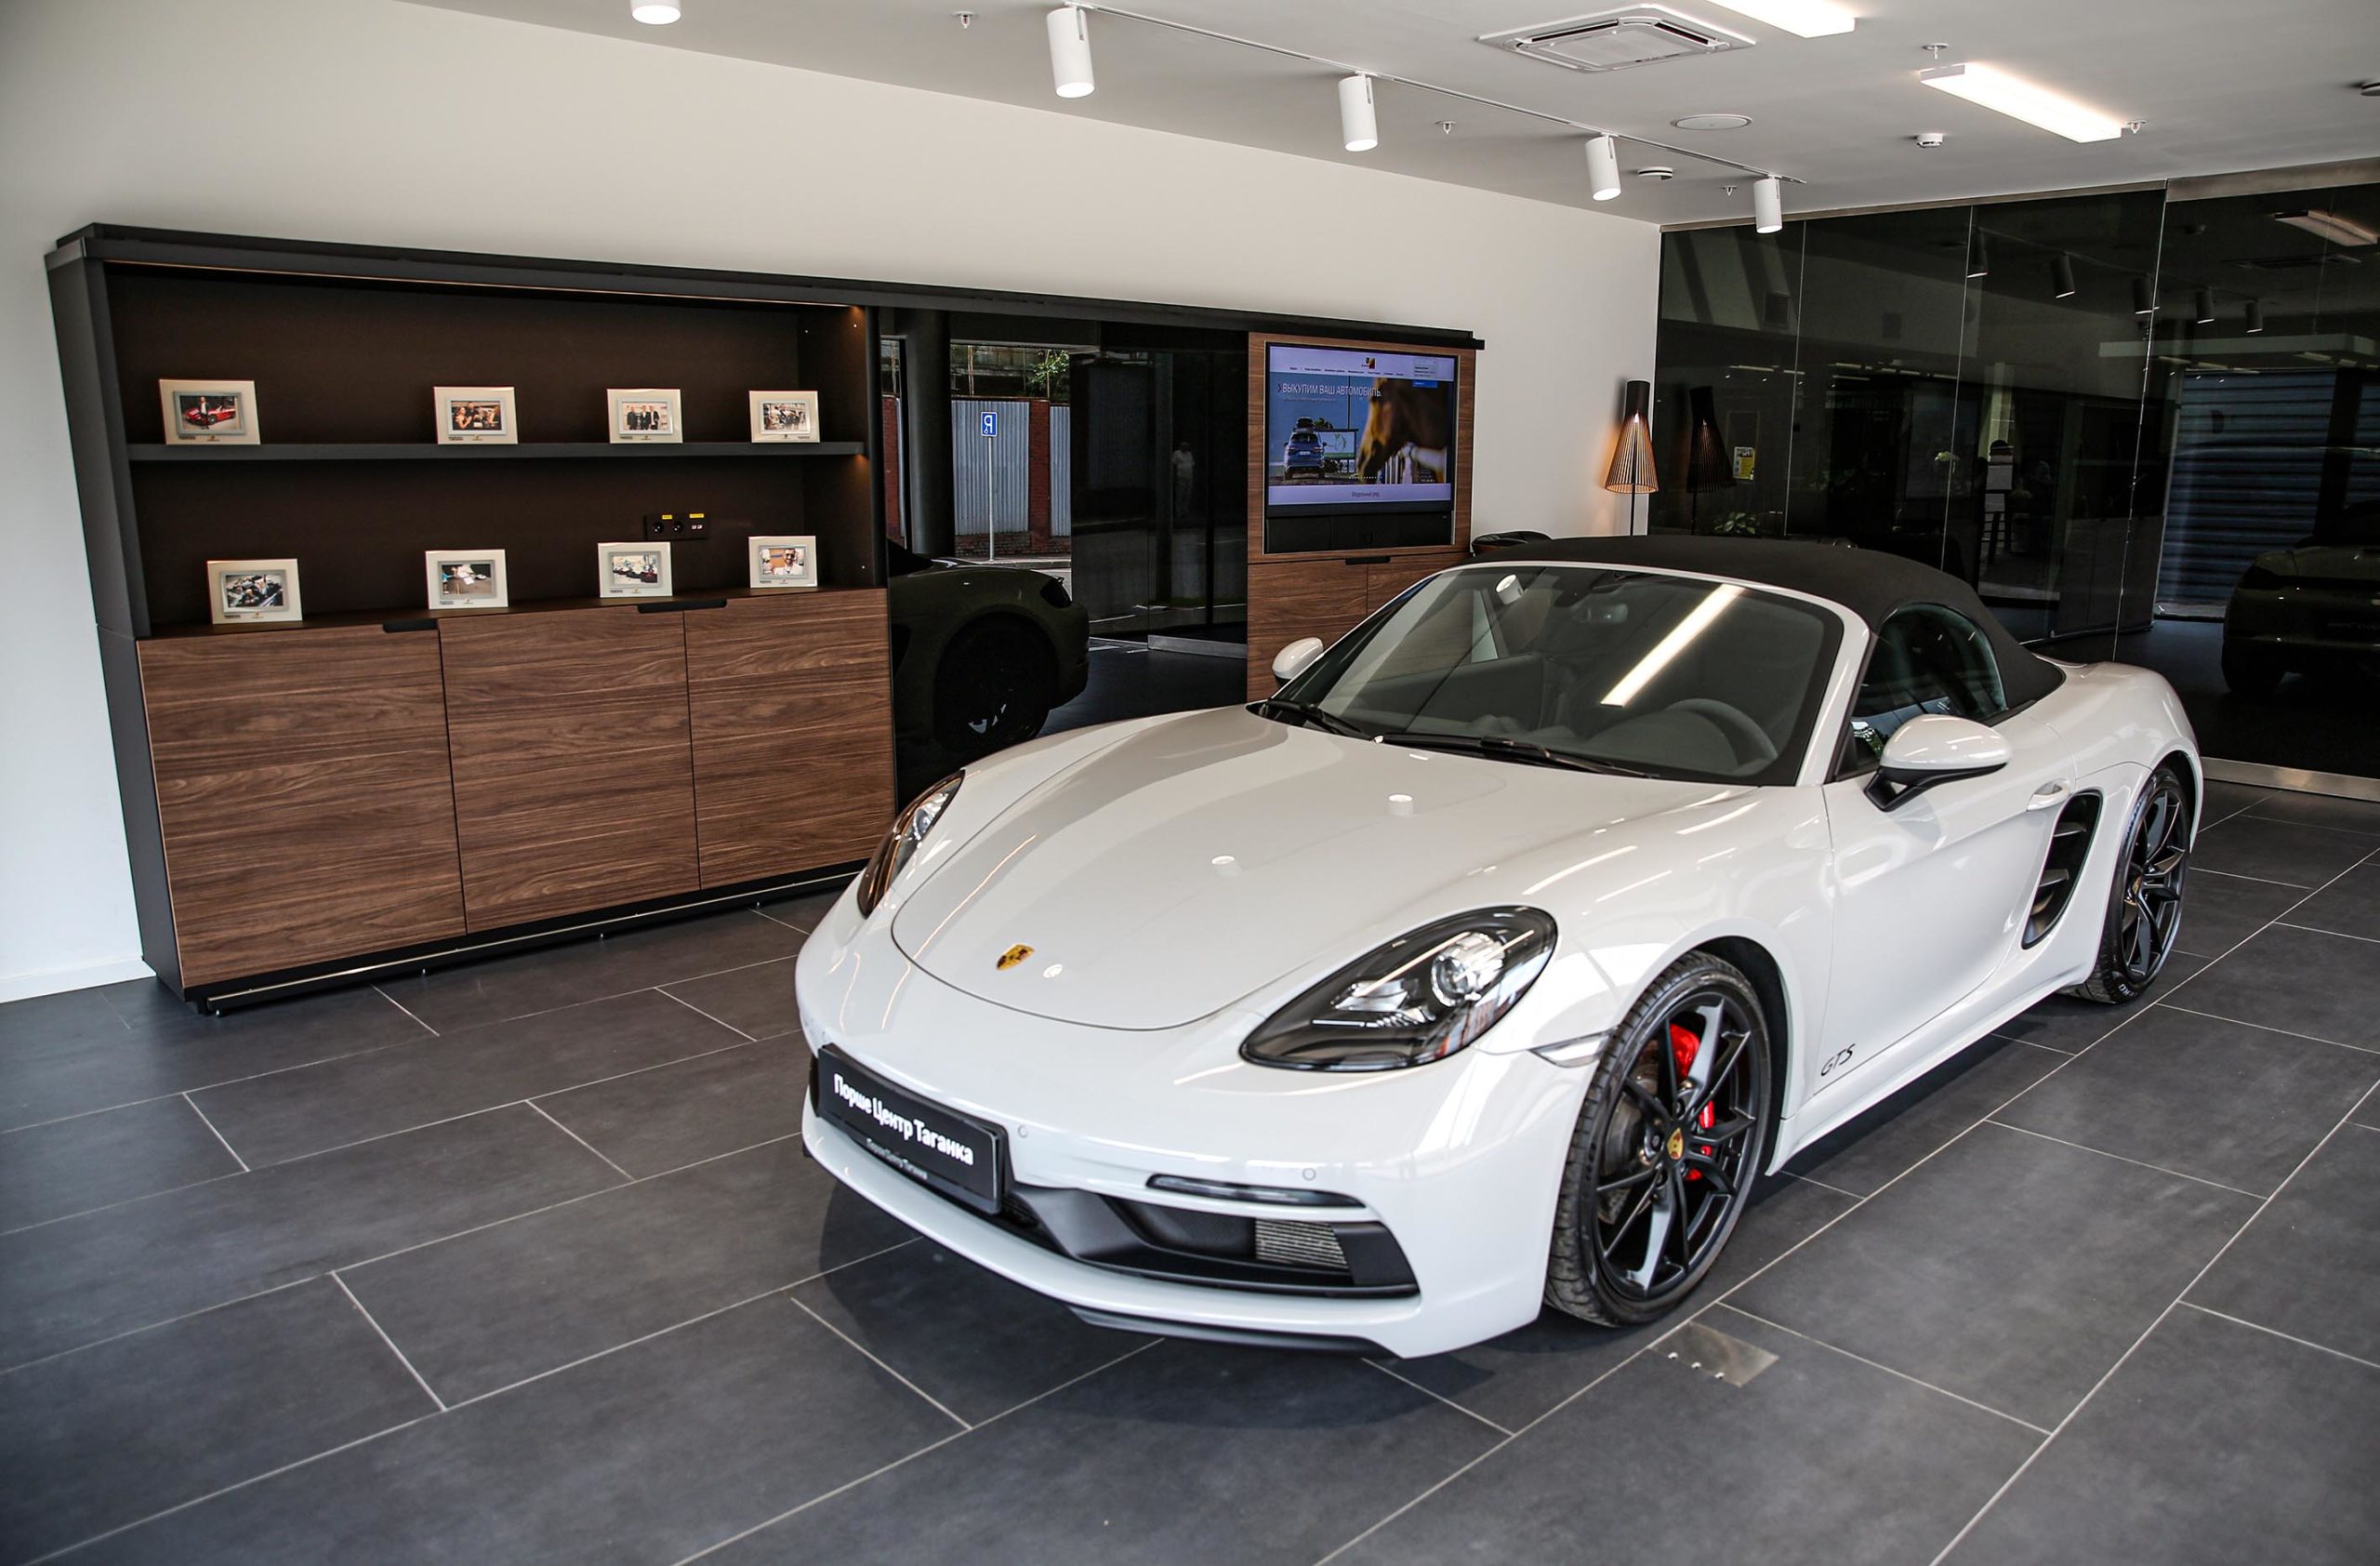 Порше Центр Таганка в новой концепции «Destination Porsche»